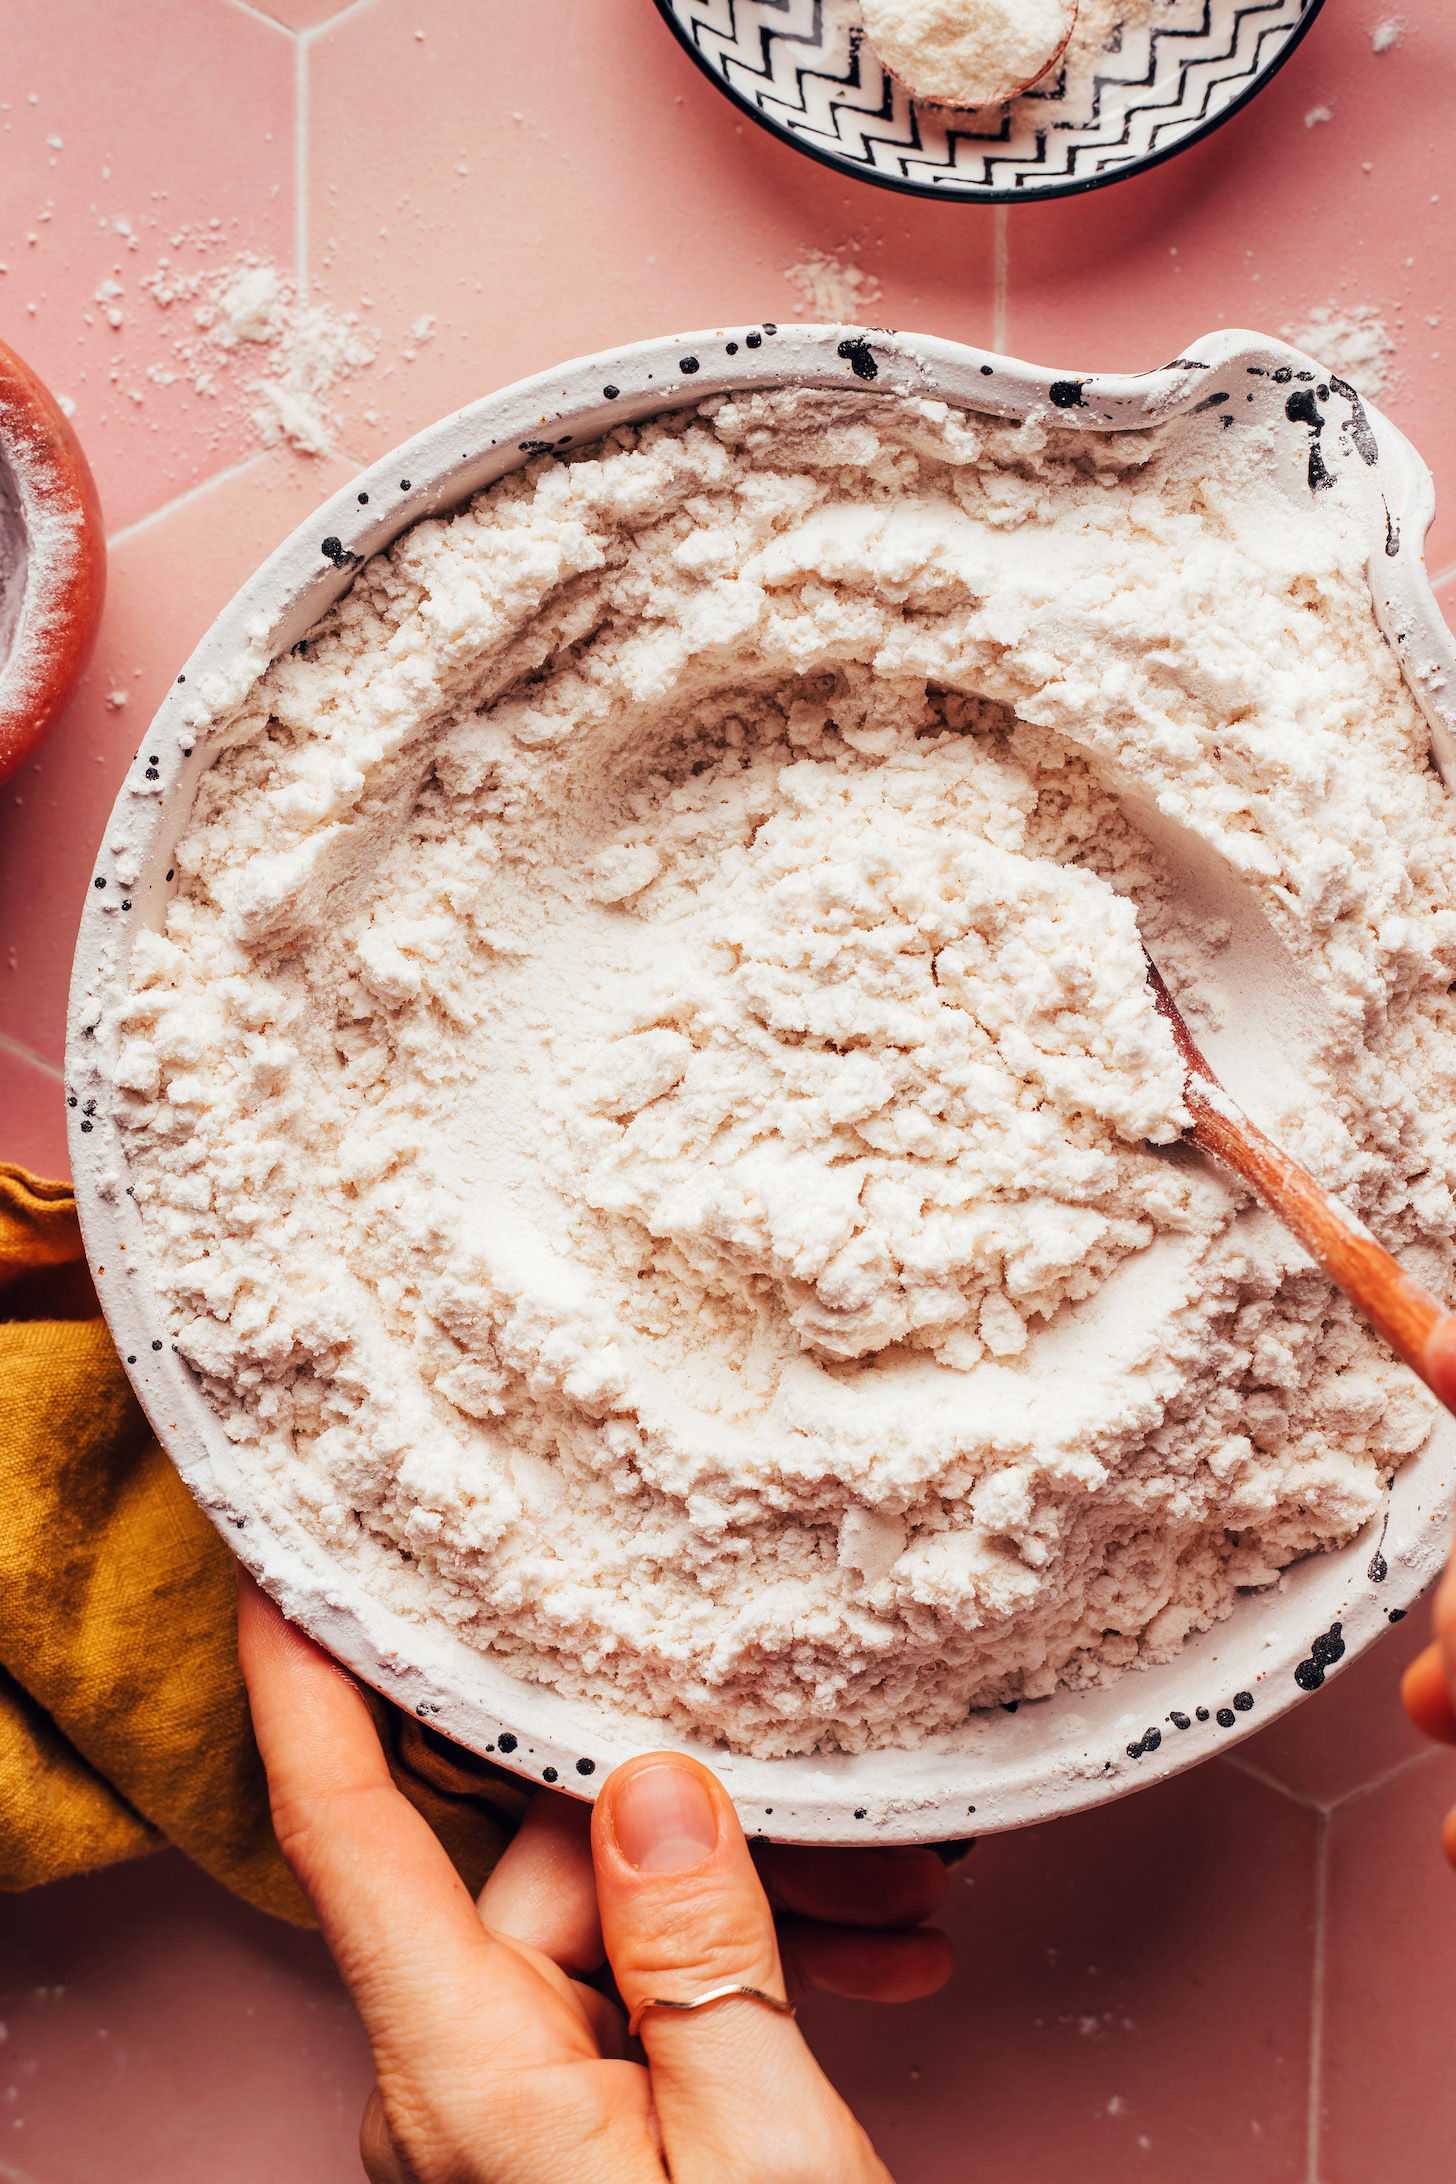 Stirring together gluten-free flours to make the best gluten-free flour blend